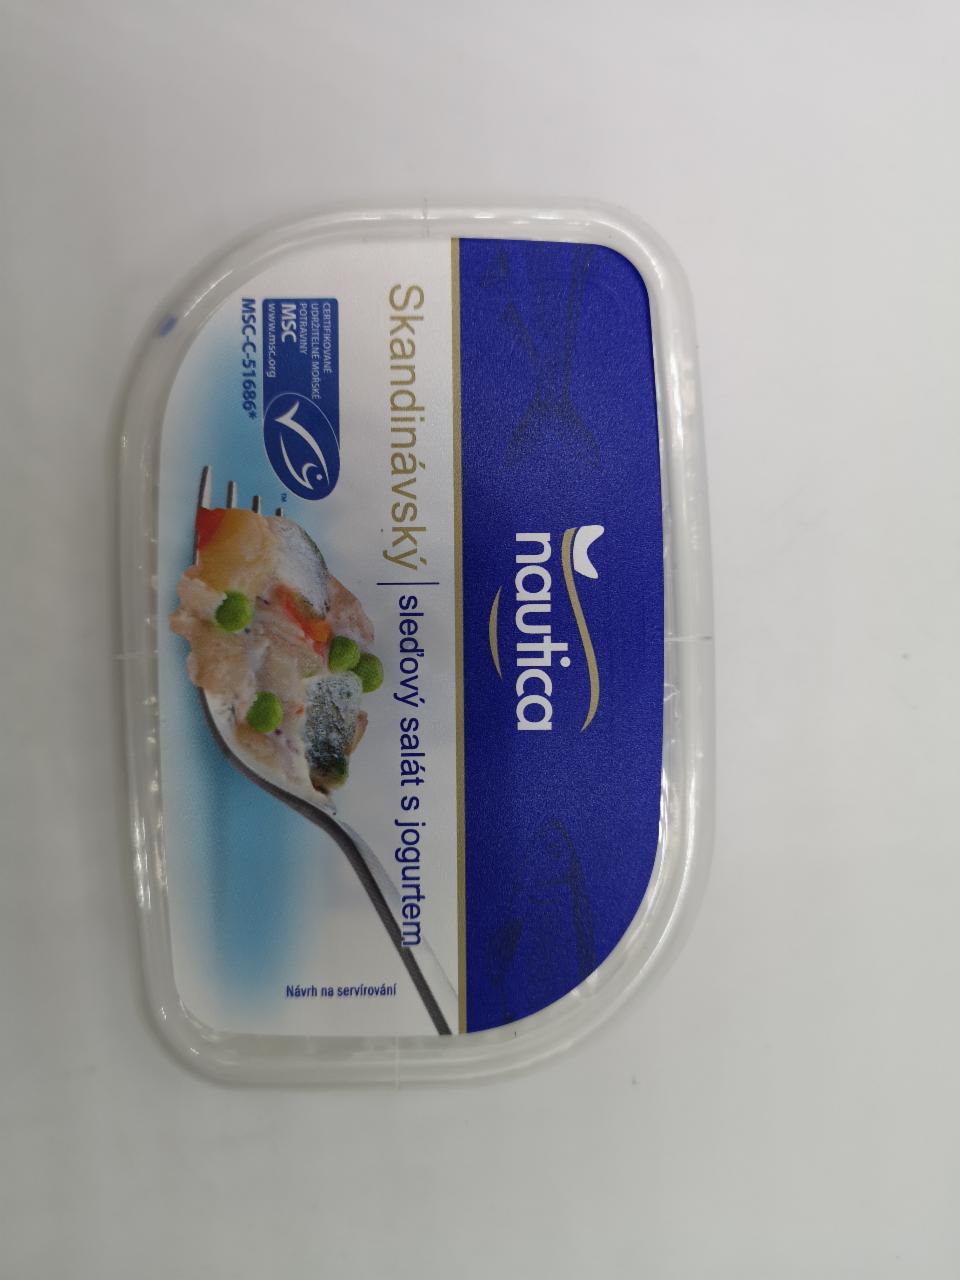 Fotografie - skandinávský sleďový salát s jogurtem Toppo